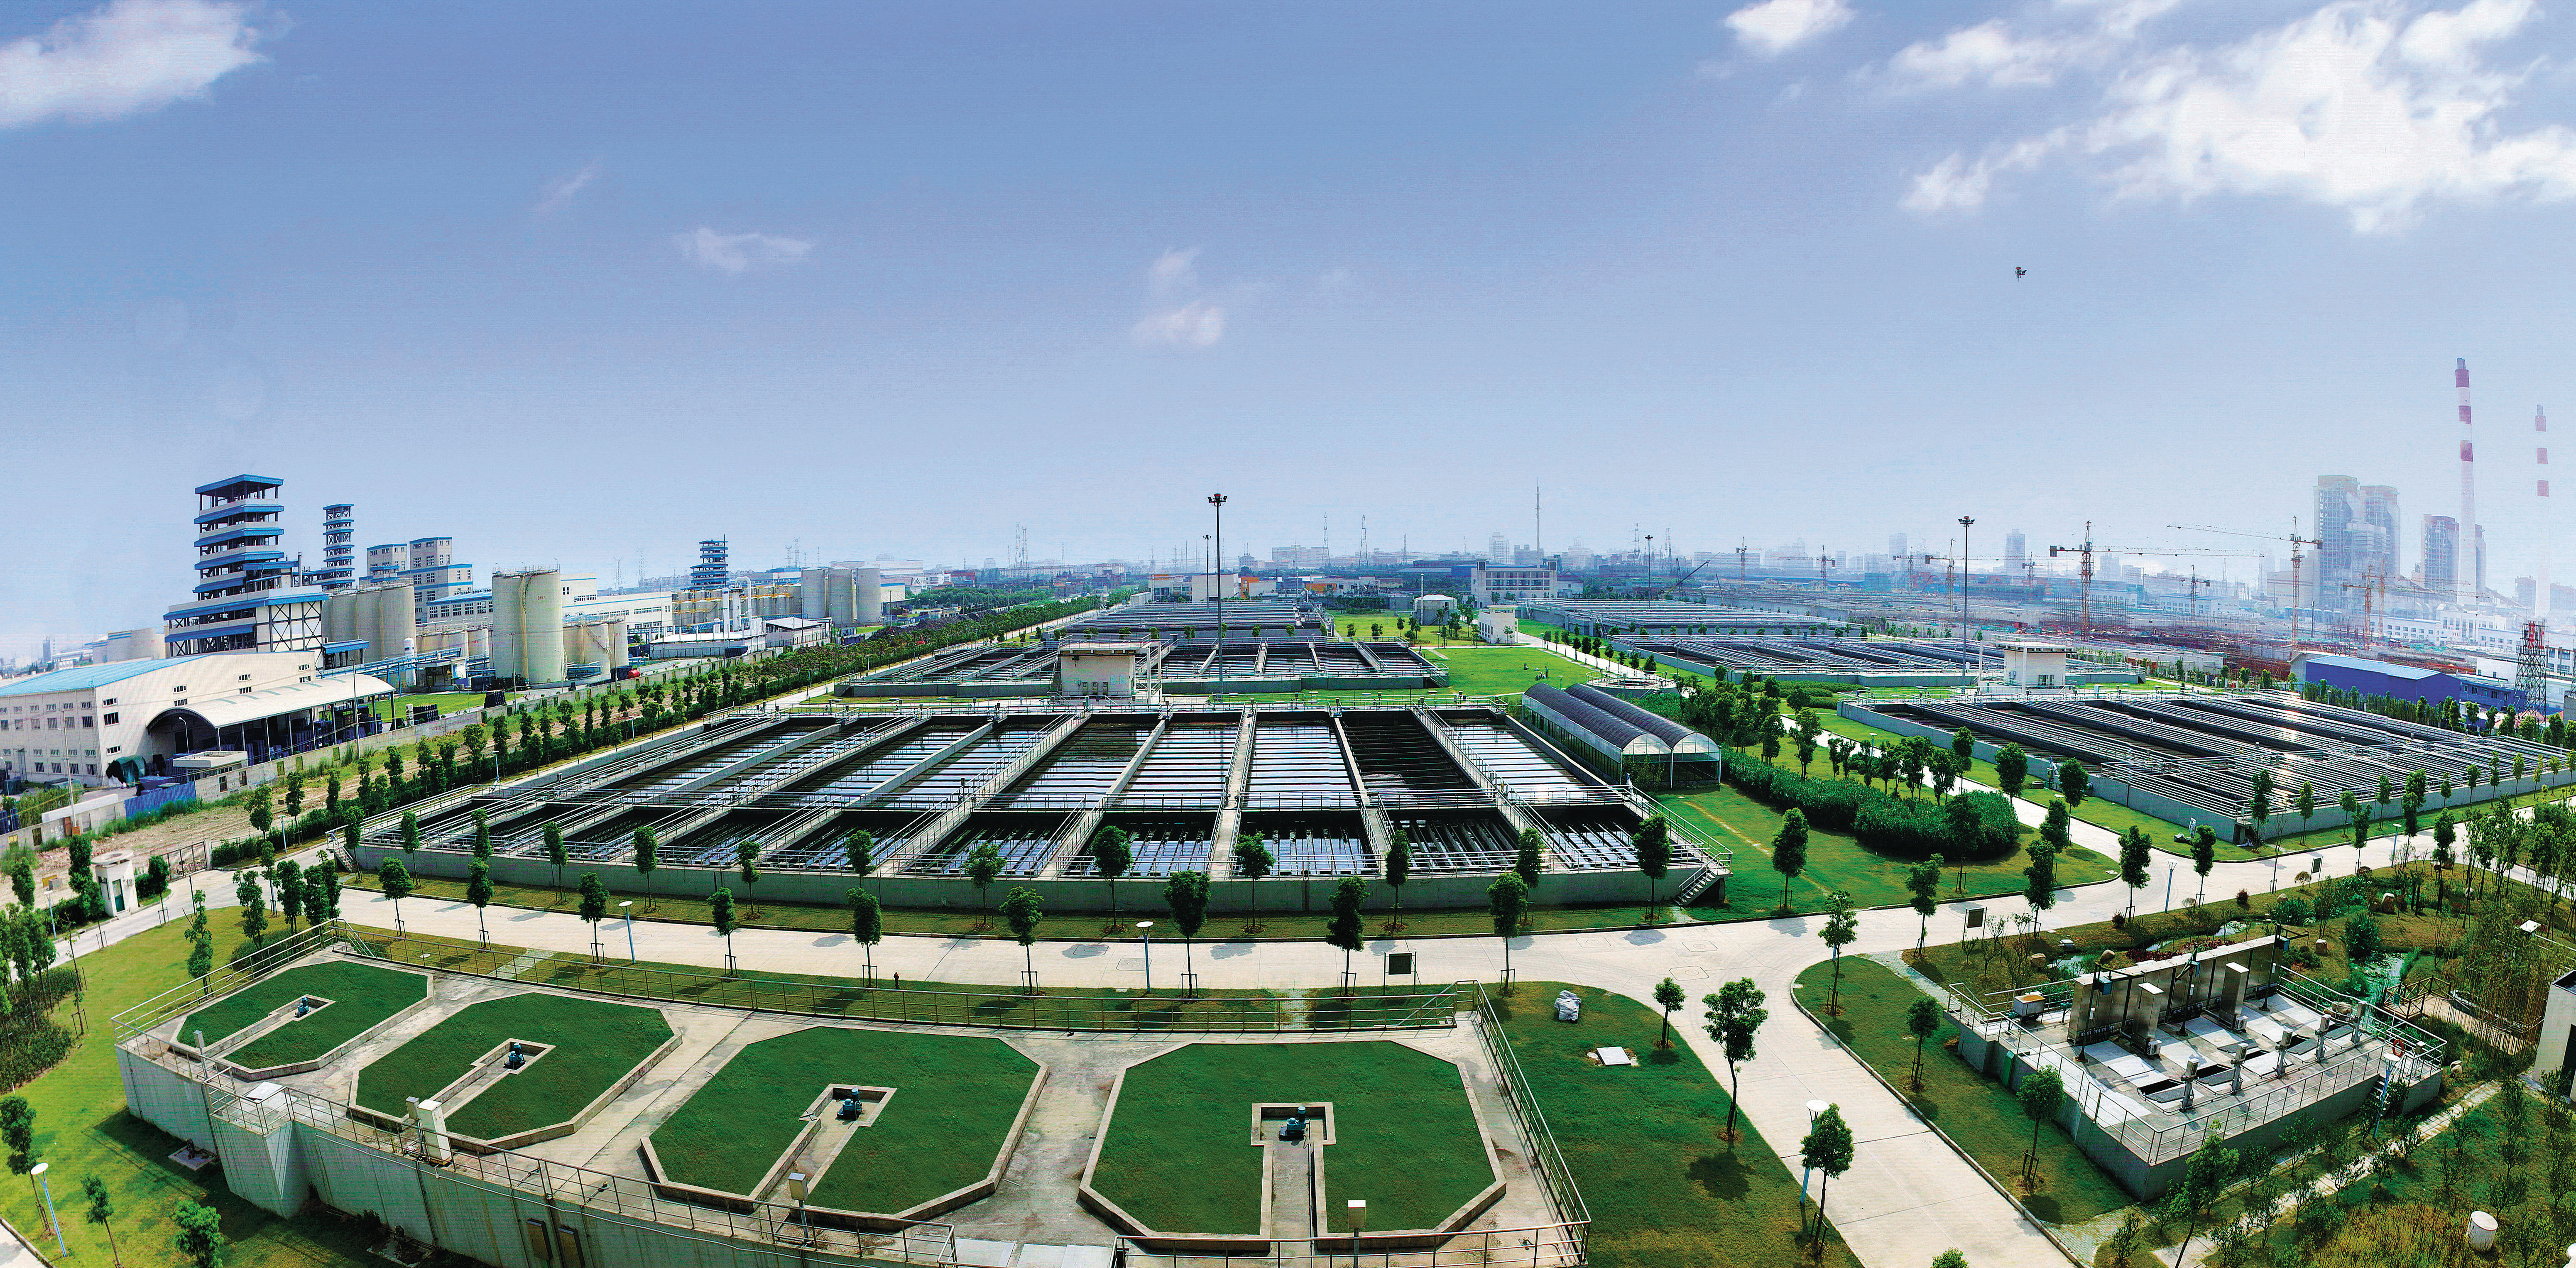 La planta de tratamiento de aguas residuales más grande de Asia: Planta de tratamiento de aguas residuales de Bailonggang de Shanghai 